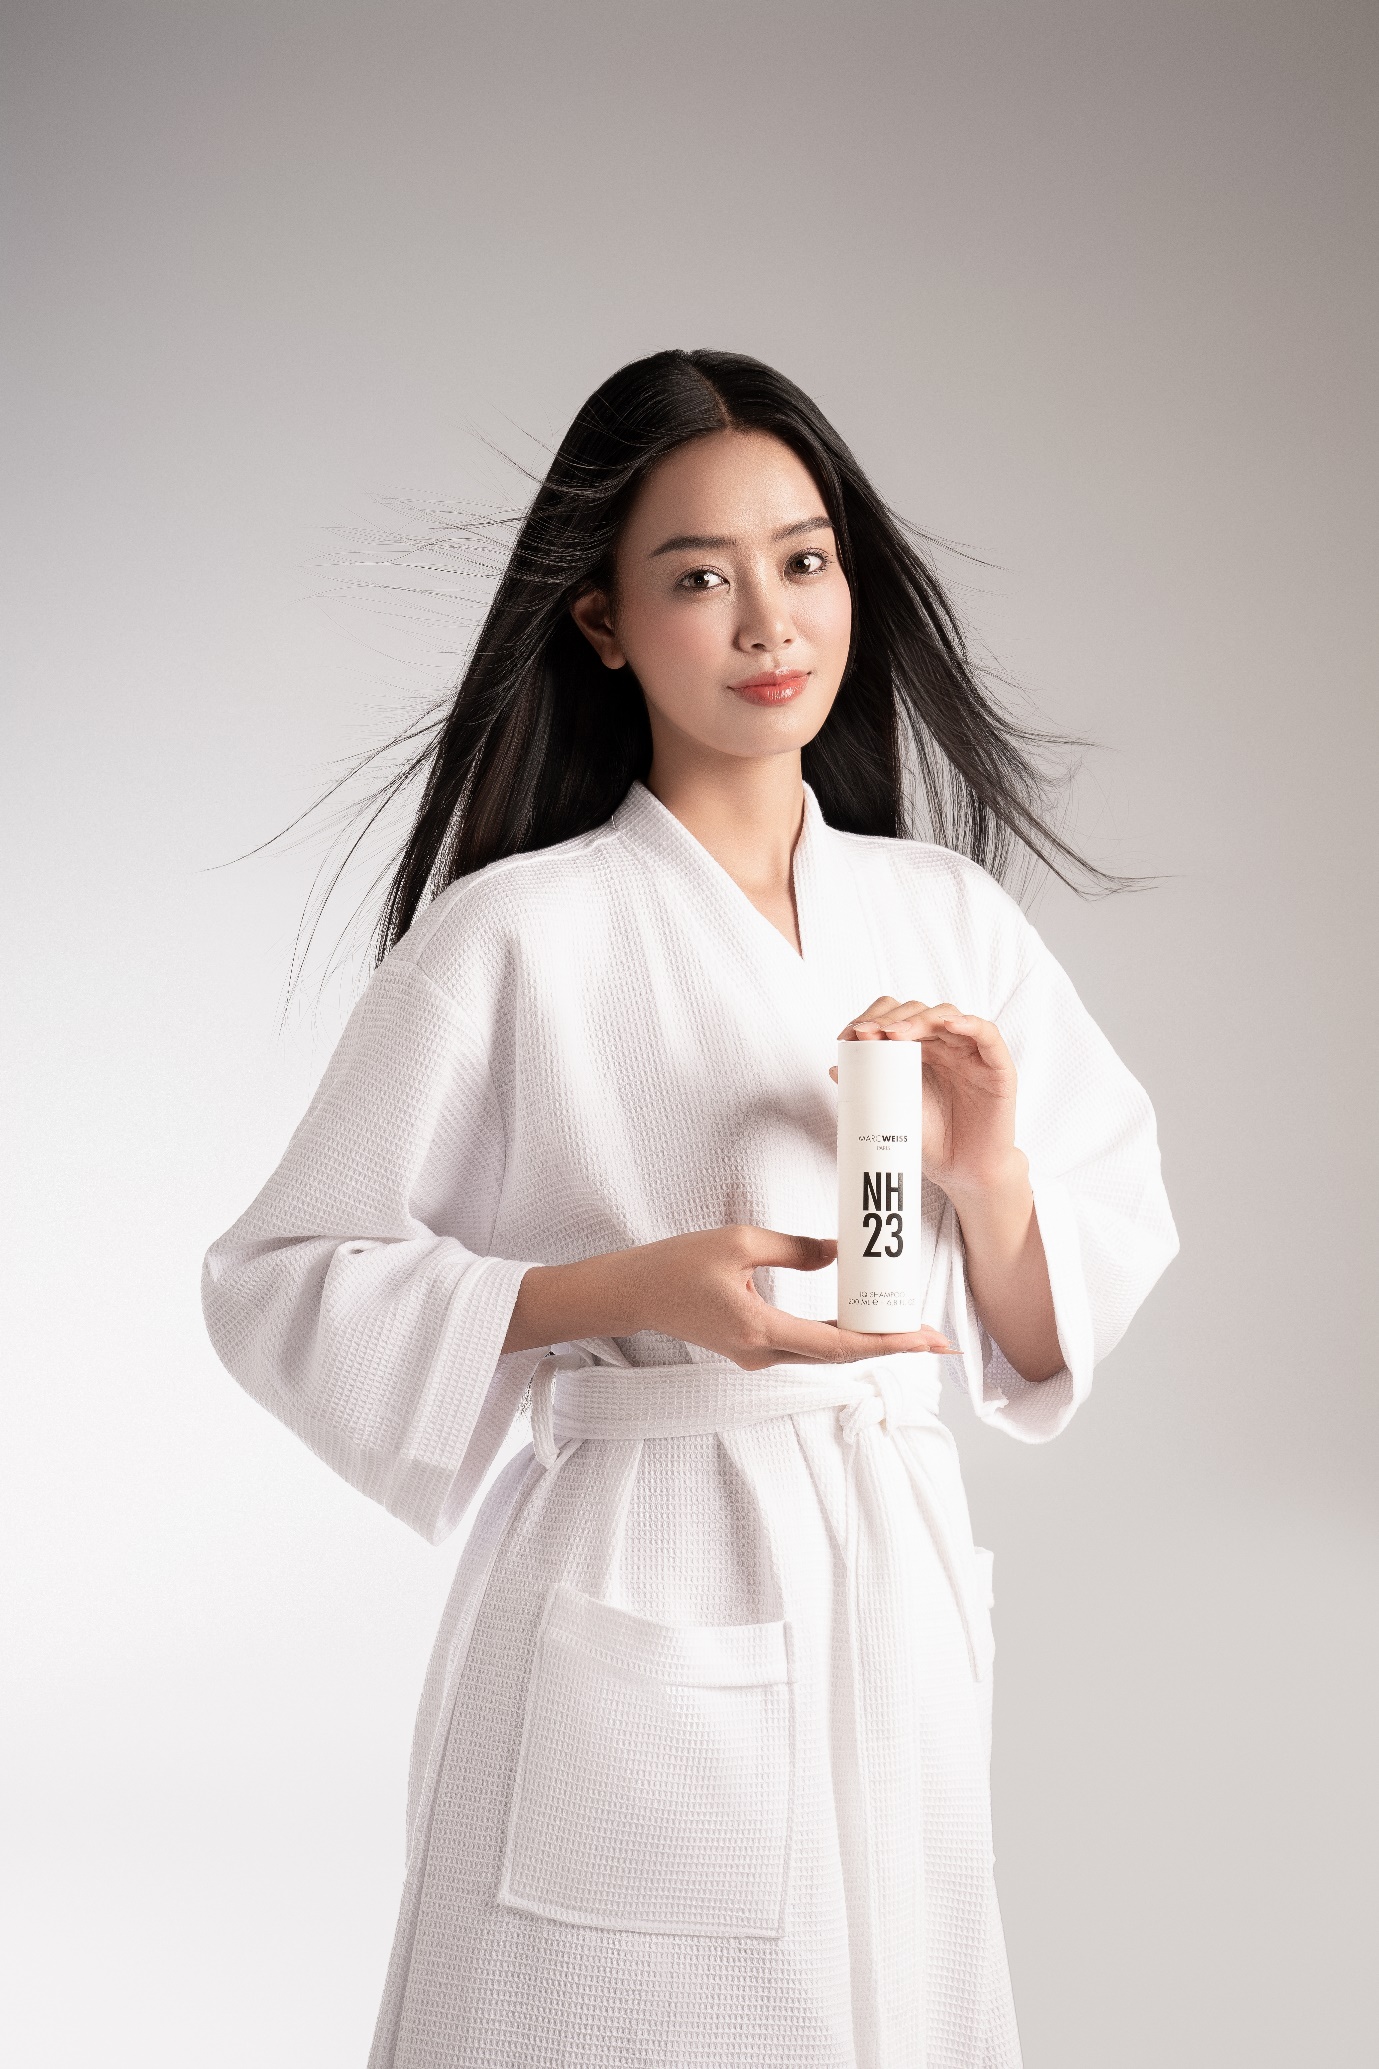 “Làm đẹp tóc” đơn giản ngay tại nhà cùng Á hậu Bùi Khánh Linh và thương hiệu NH23 - Ảnh 8.